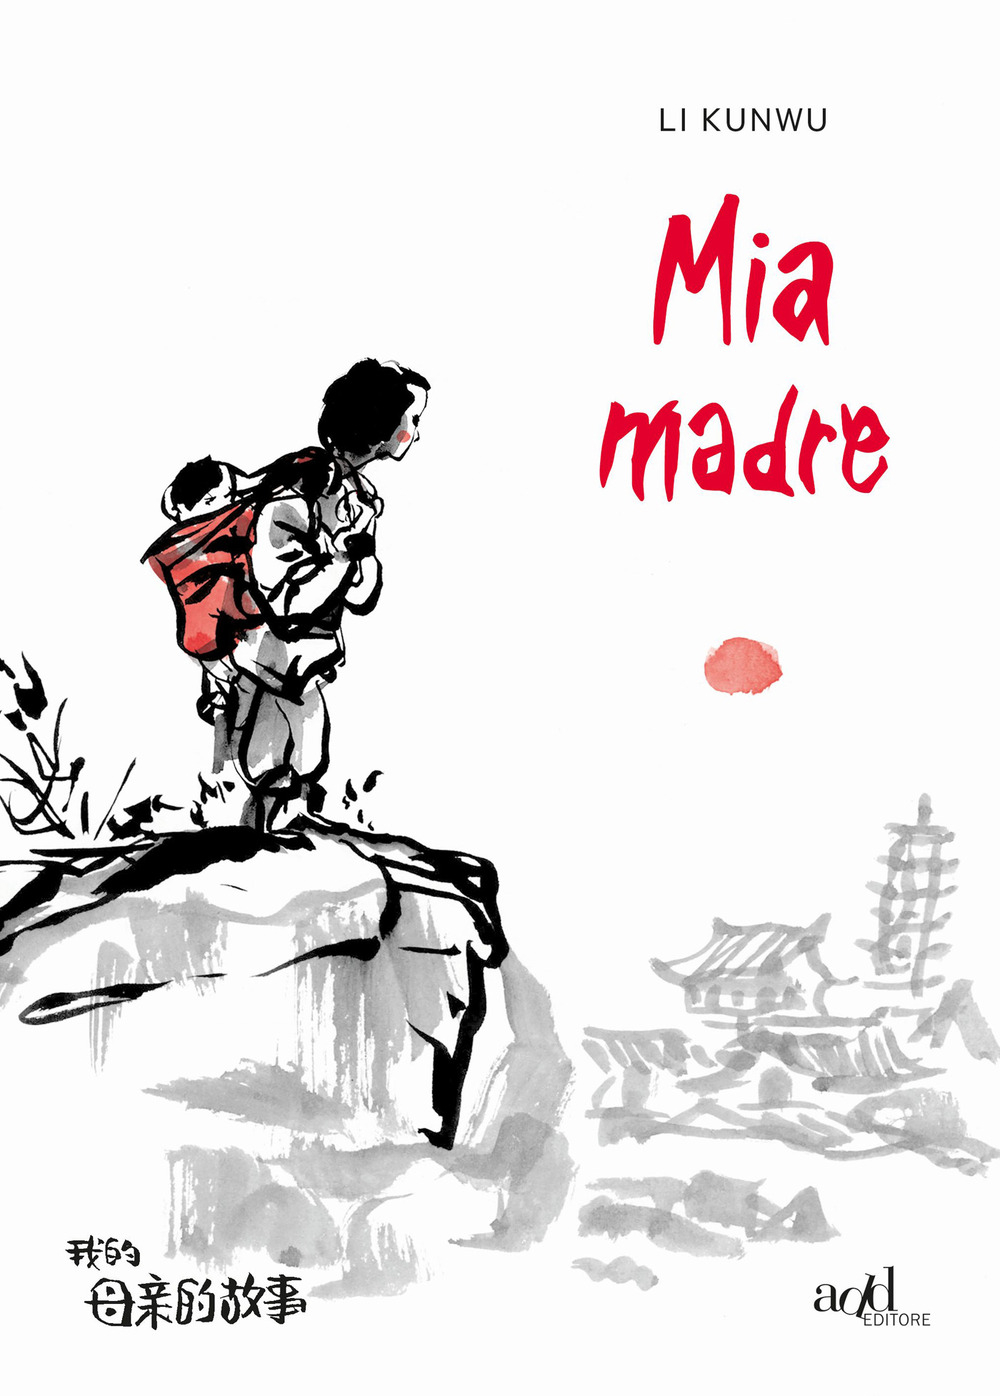 Libri Kunwu Li - Mia Madre NUOVO SIGILLATO, EDIZIONE DEL 11/11/2020 SUBITO DISPONIBILE